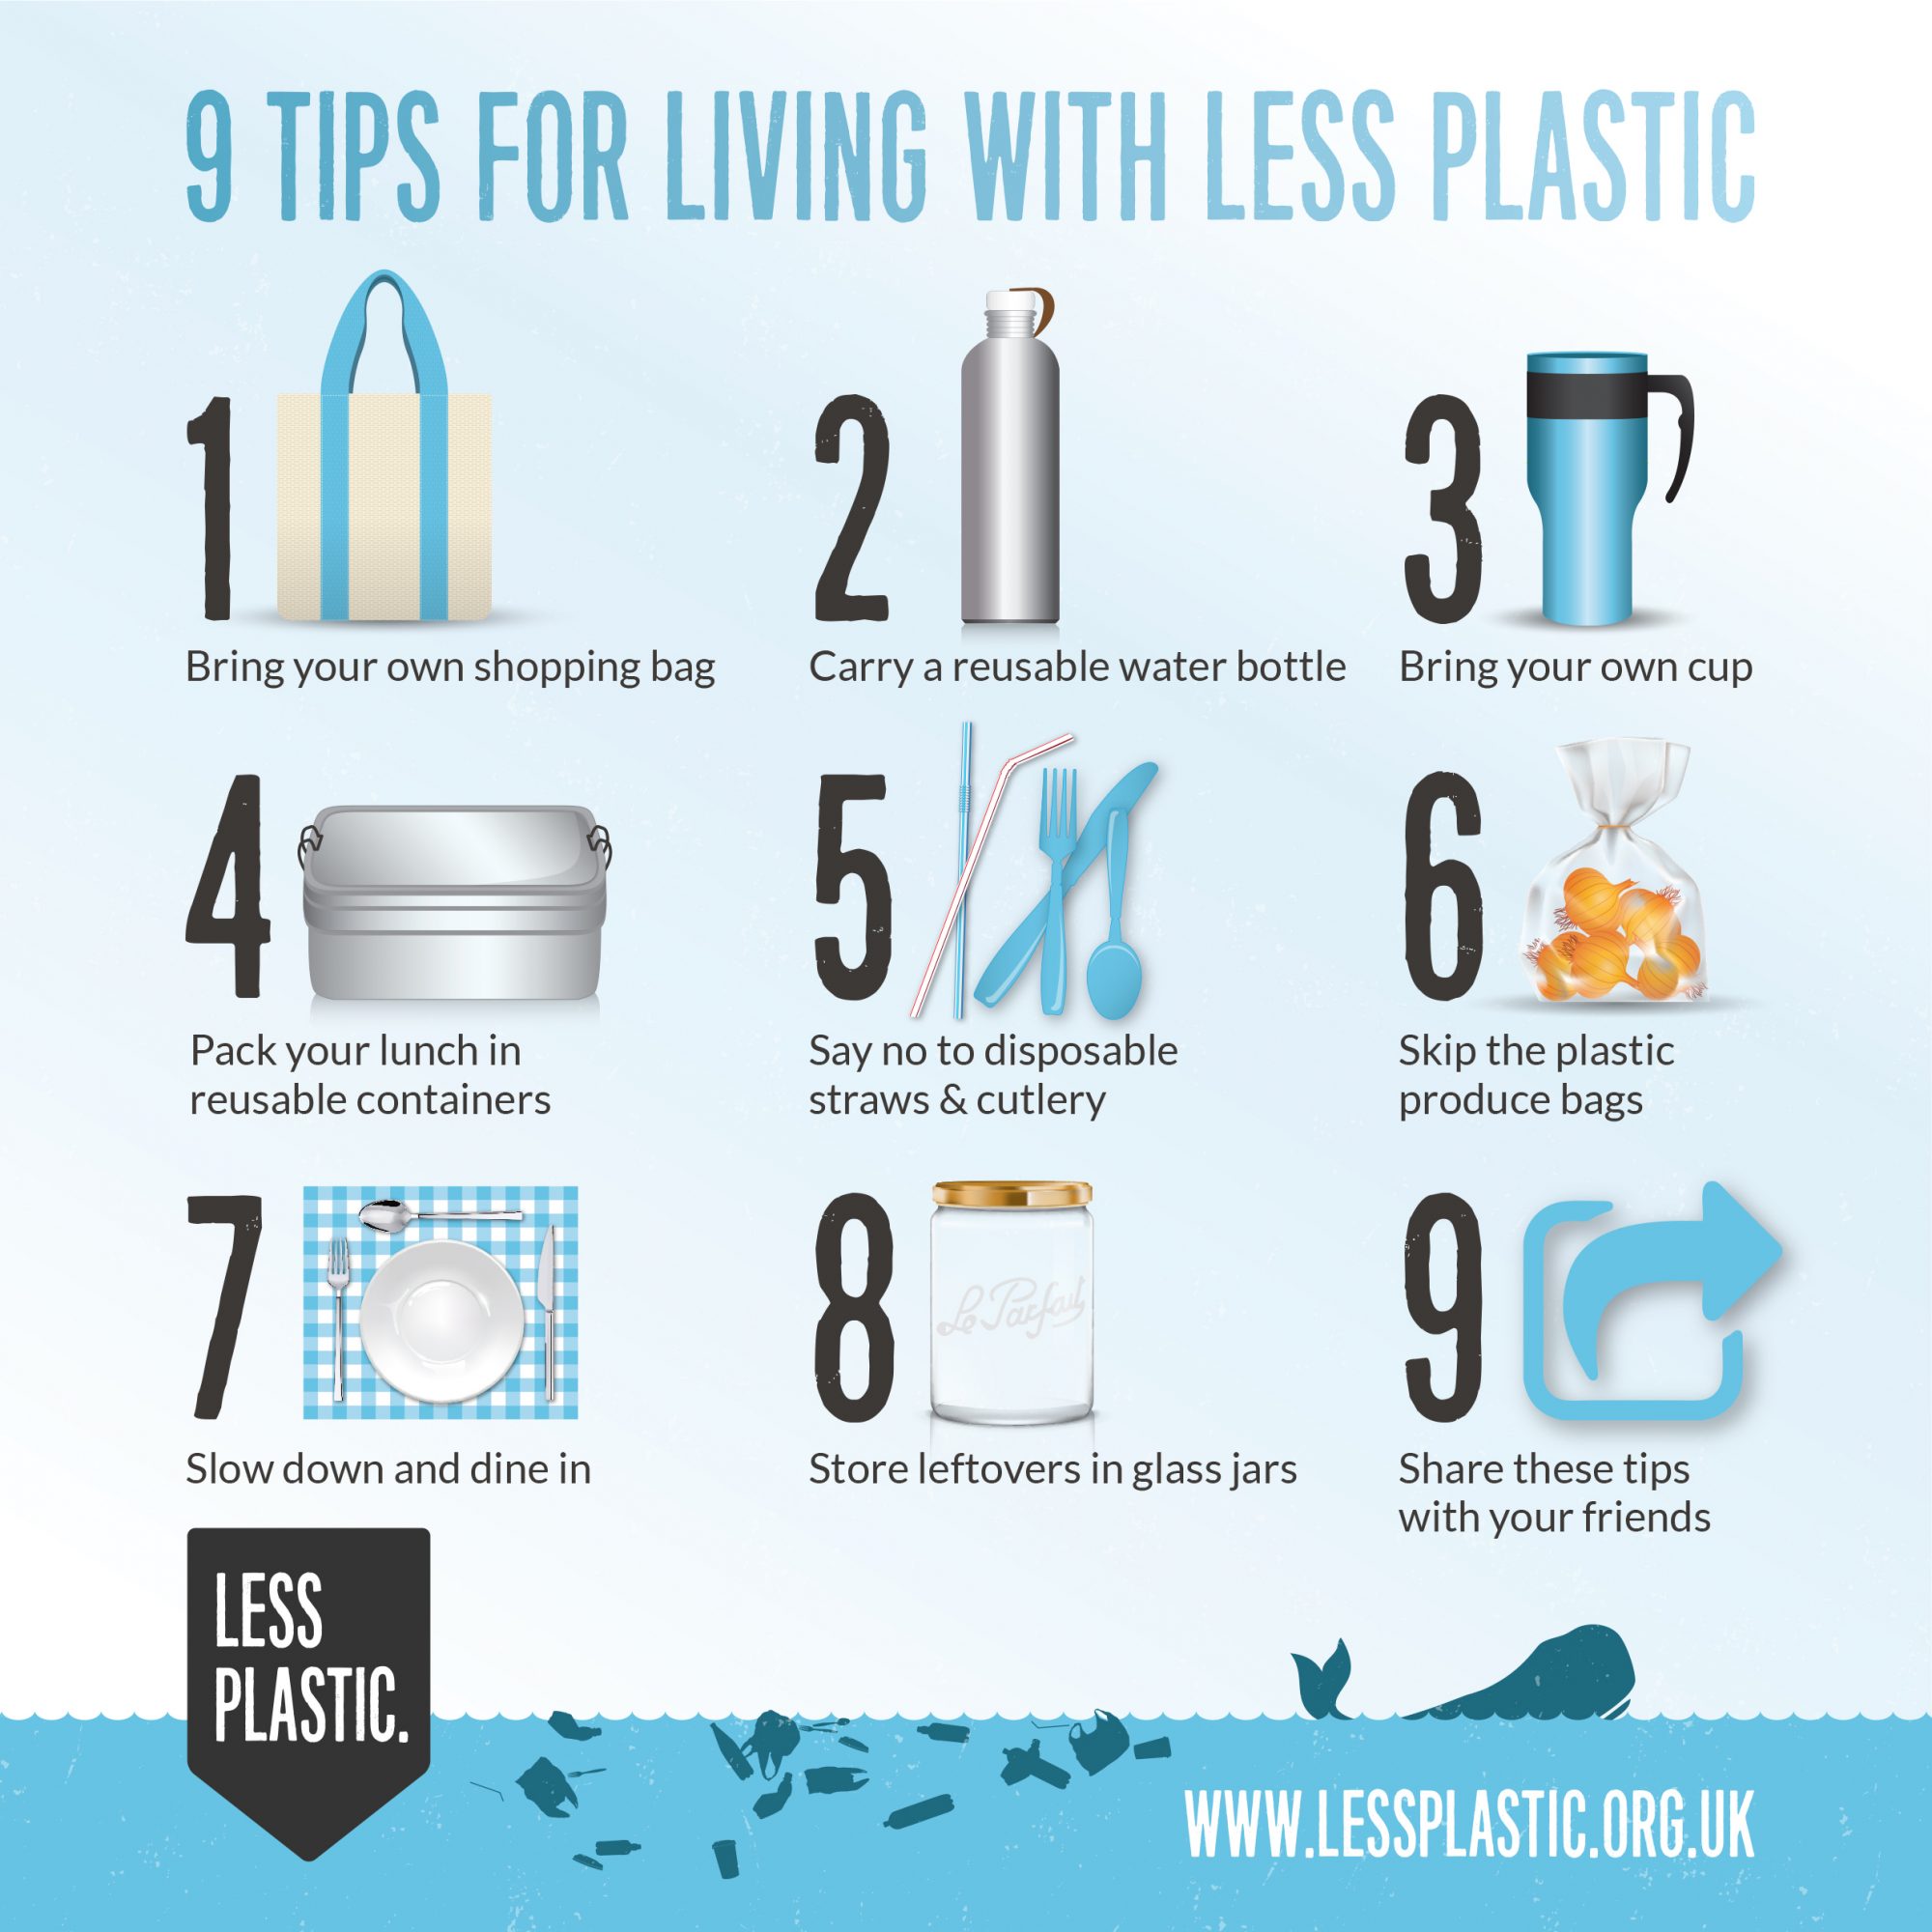 https://www.lessplastic.org.uk/wp-content/uploads/2019/10/9-tips-for-living-with-less-plastic-square-org_-21cm.jpg